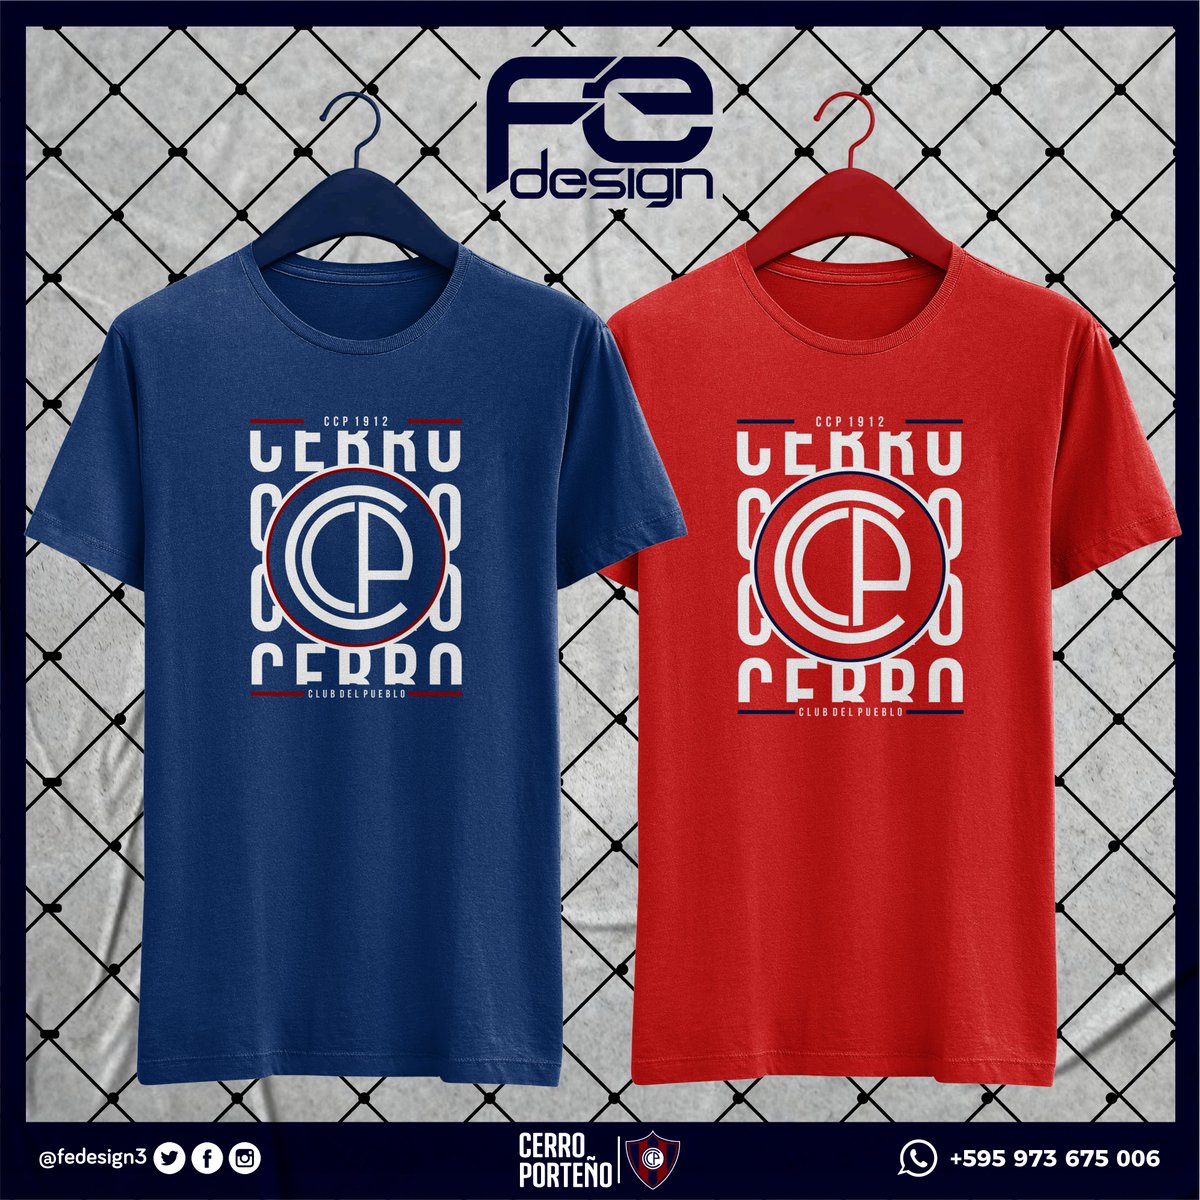 FE design on Twitter: "Remeras 100% Algodón - Diseños Exclusivos #fedesign #cerroporteño #clubdelpueblo Envíos el https://t.co/lDMndrjv4F" / Twitter